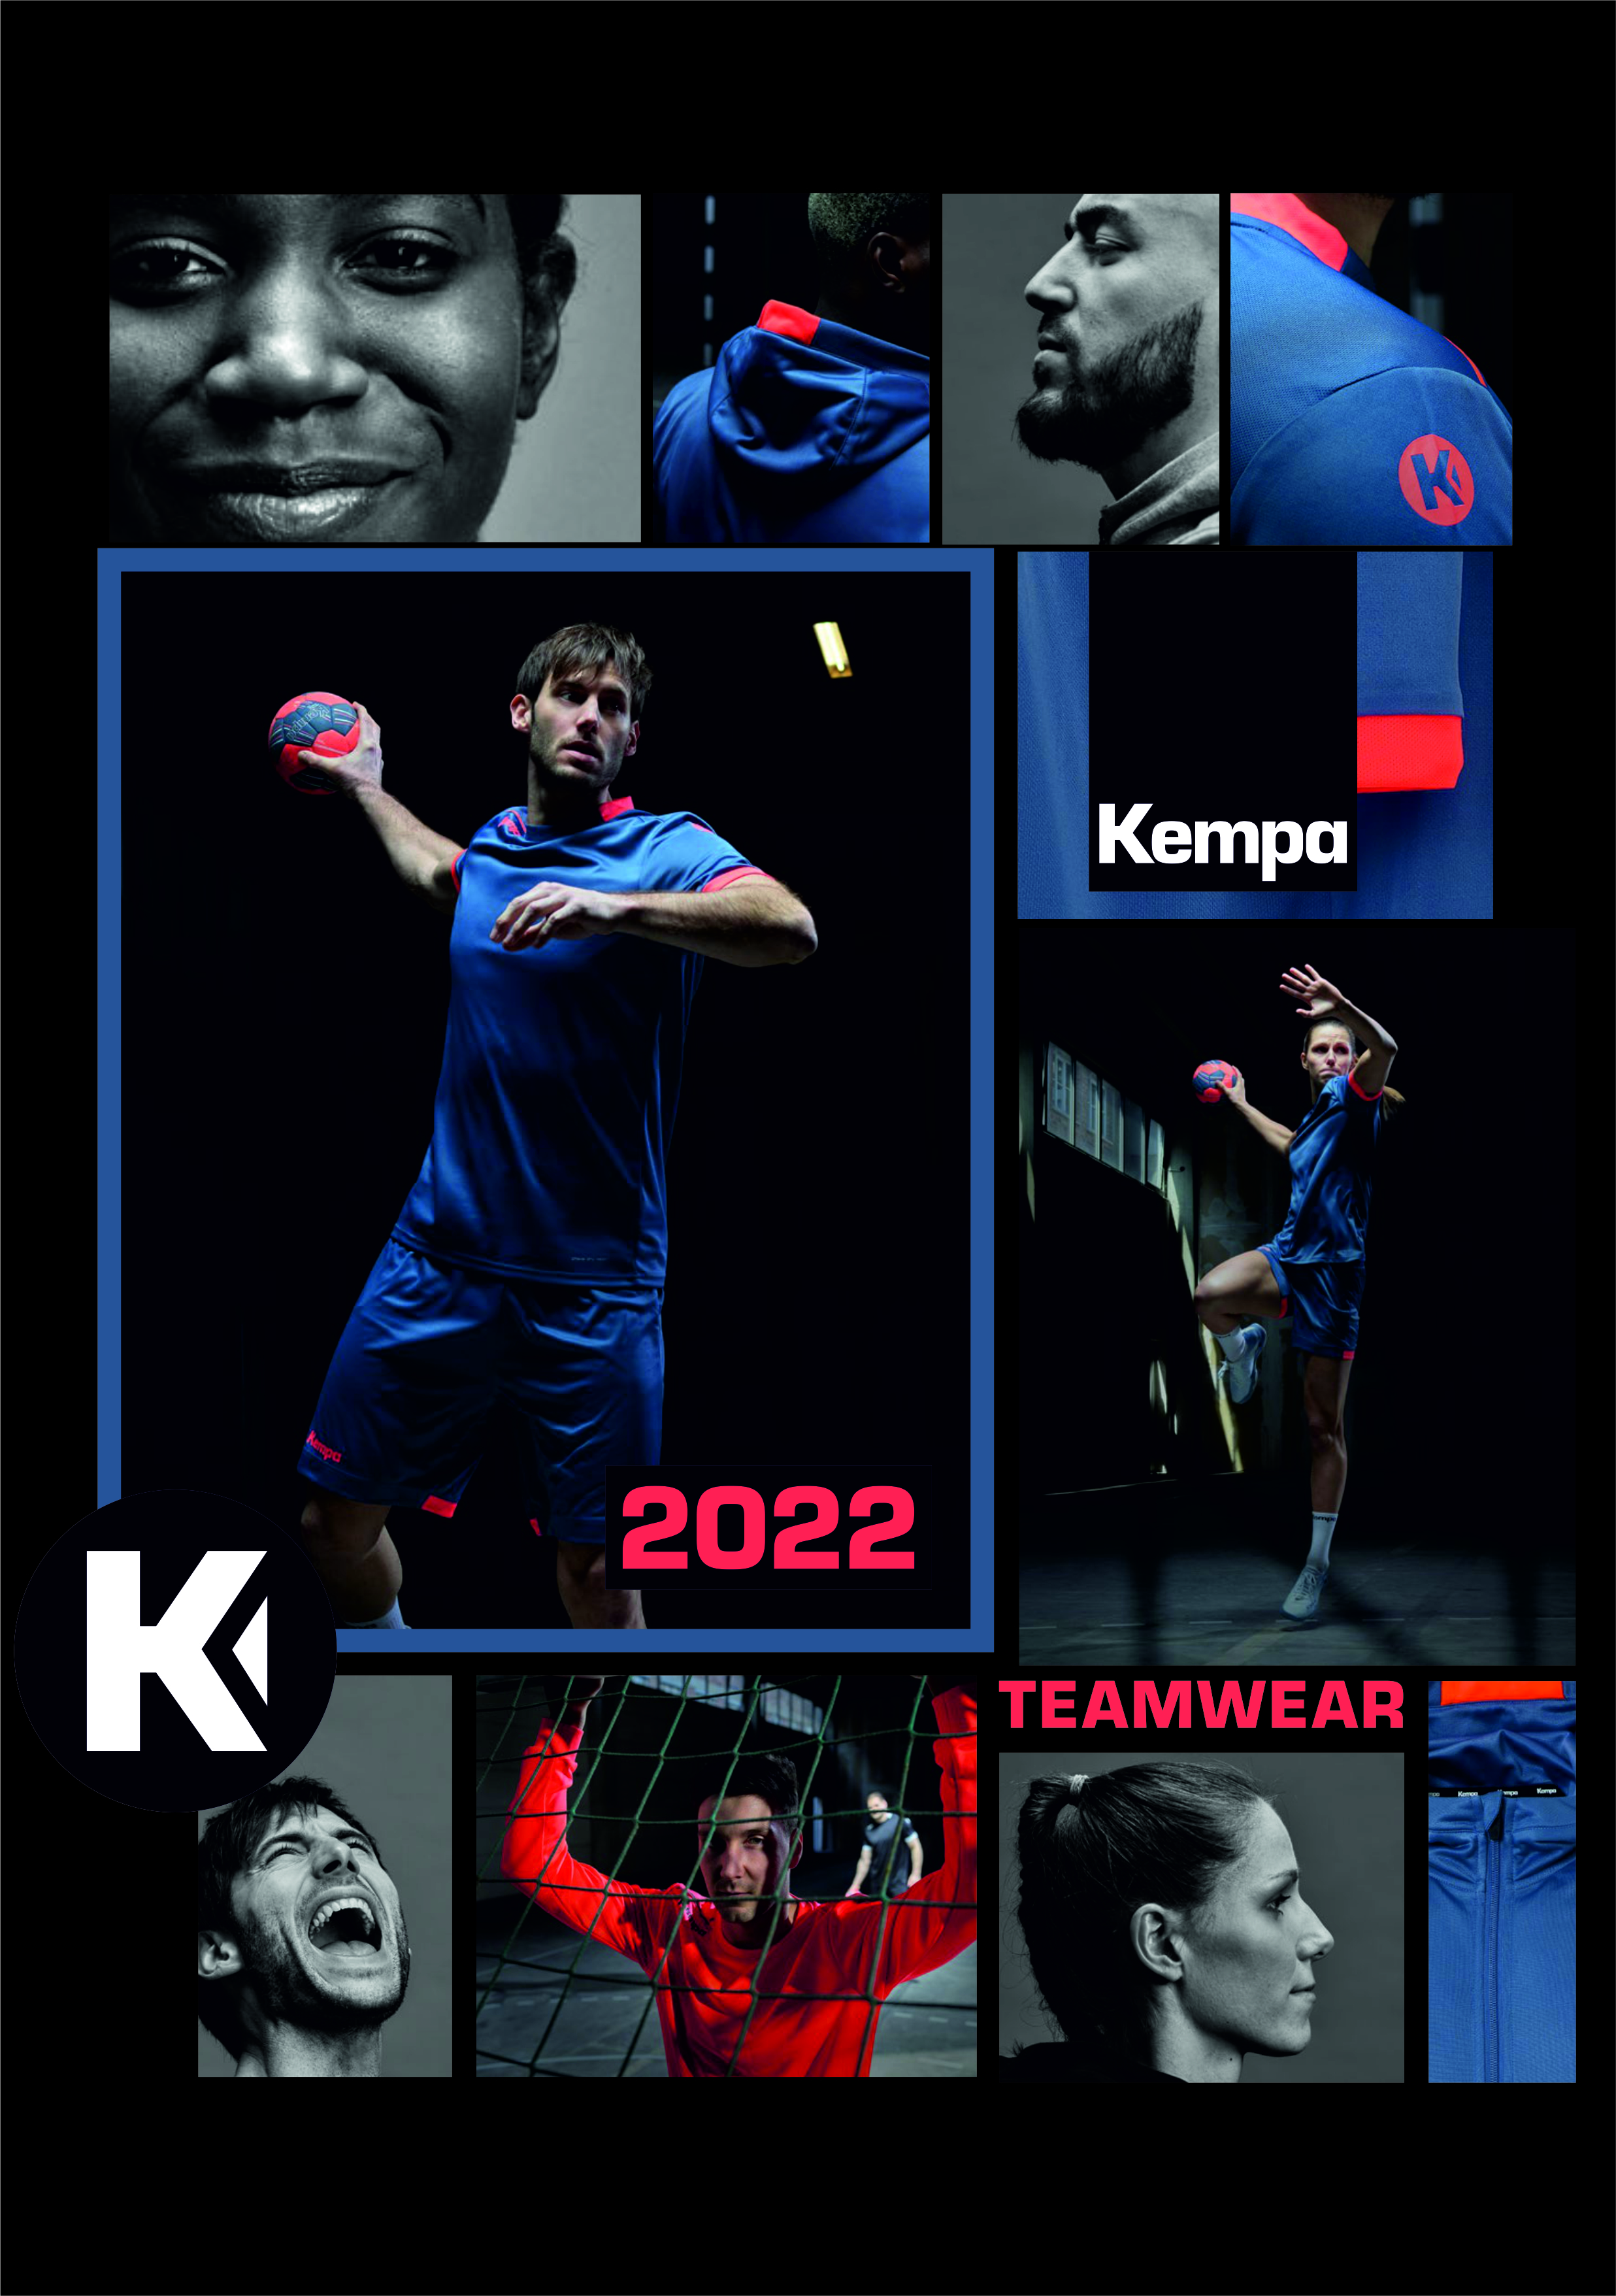 Kempa Teamwear 2022